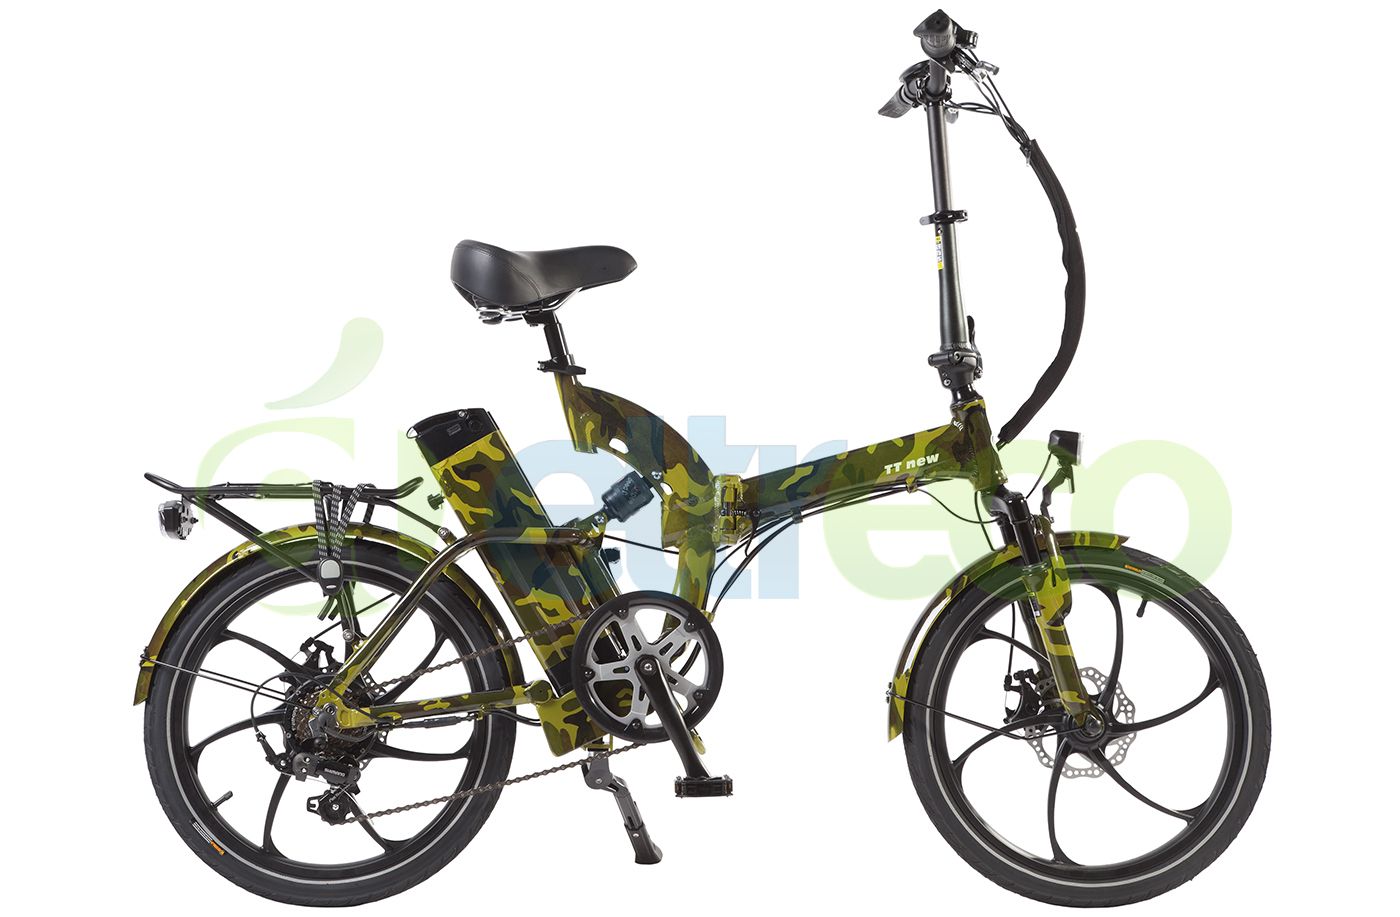  Отзывы о Электровелосипеде Eltreco TT 5.0 2016